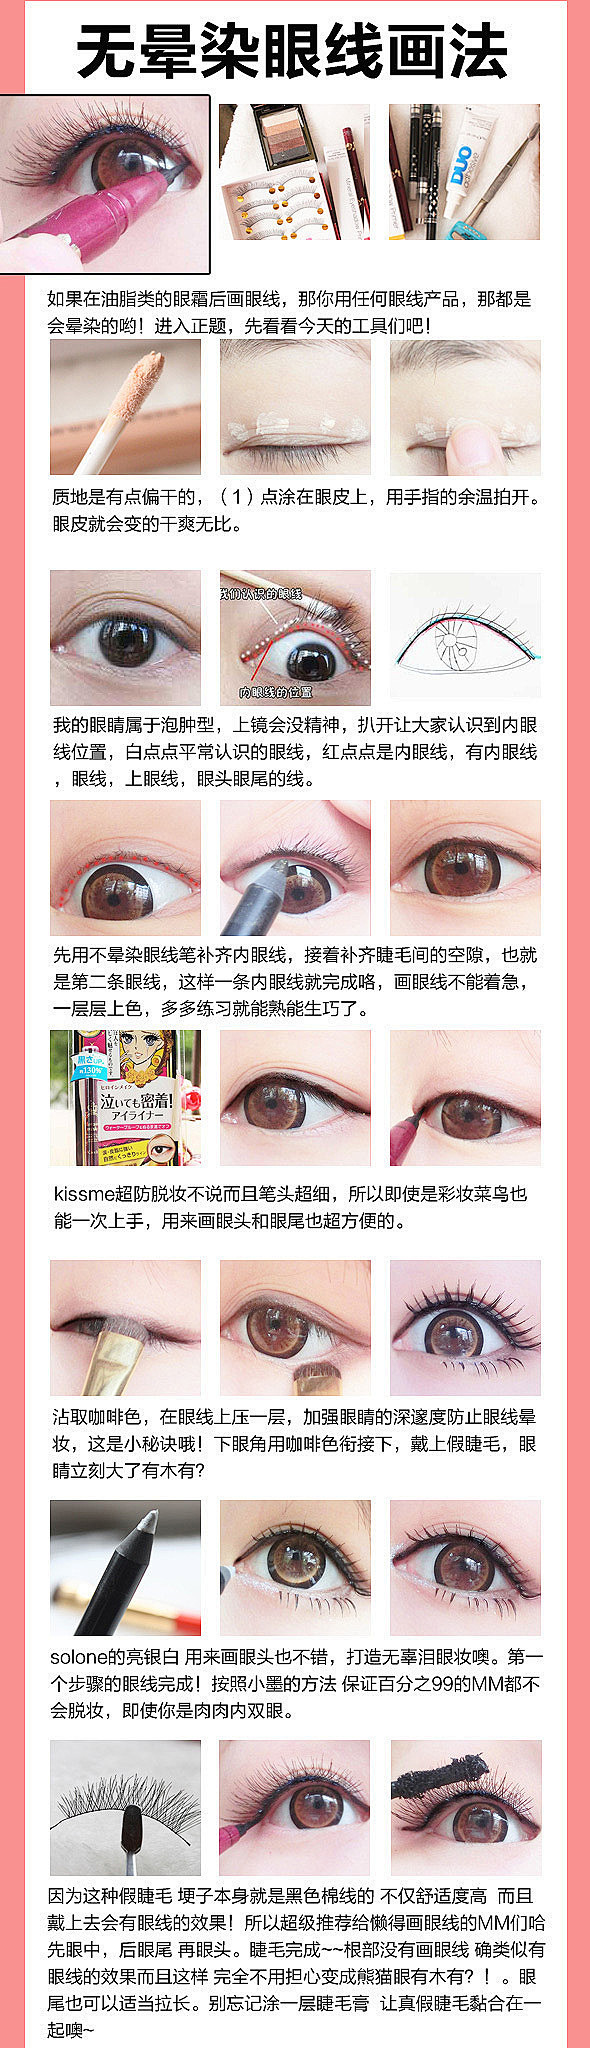  化妆眼线http://www.tao6...